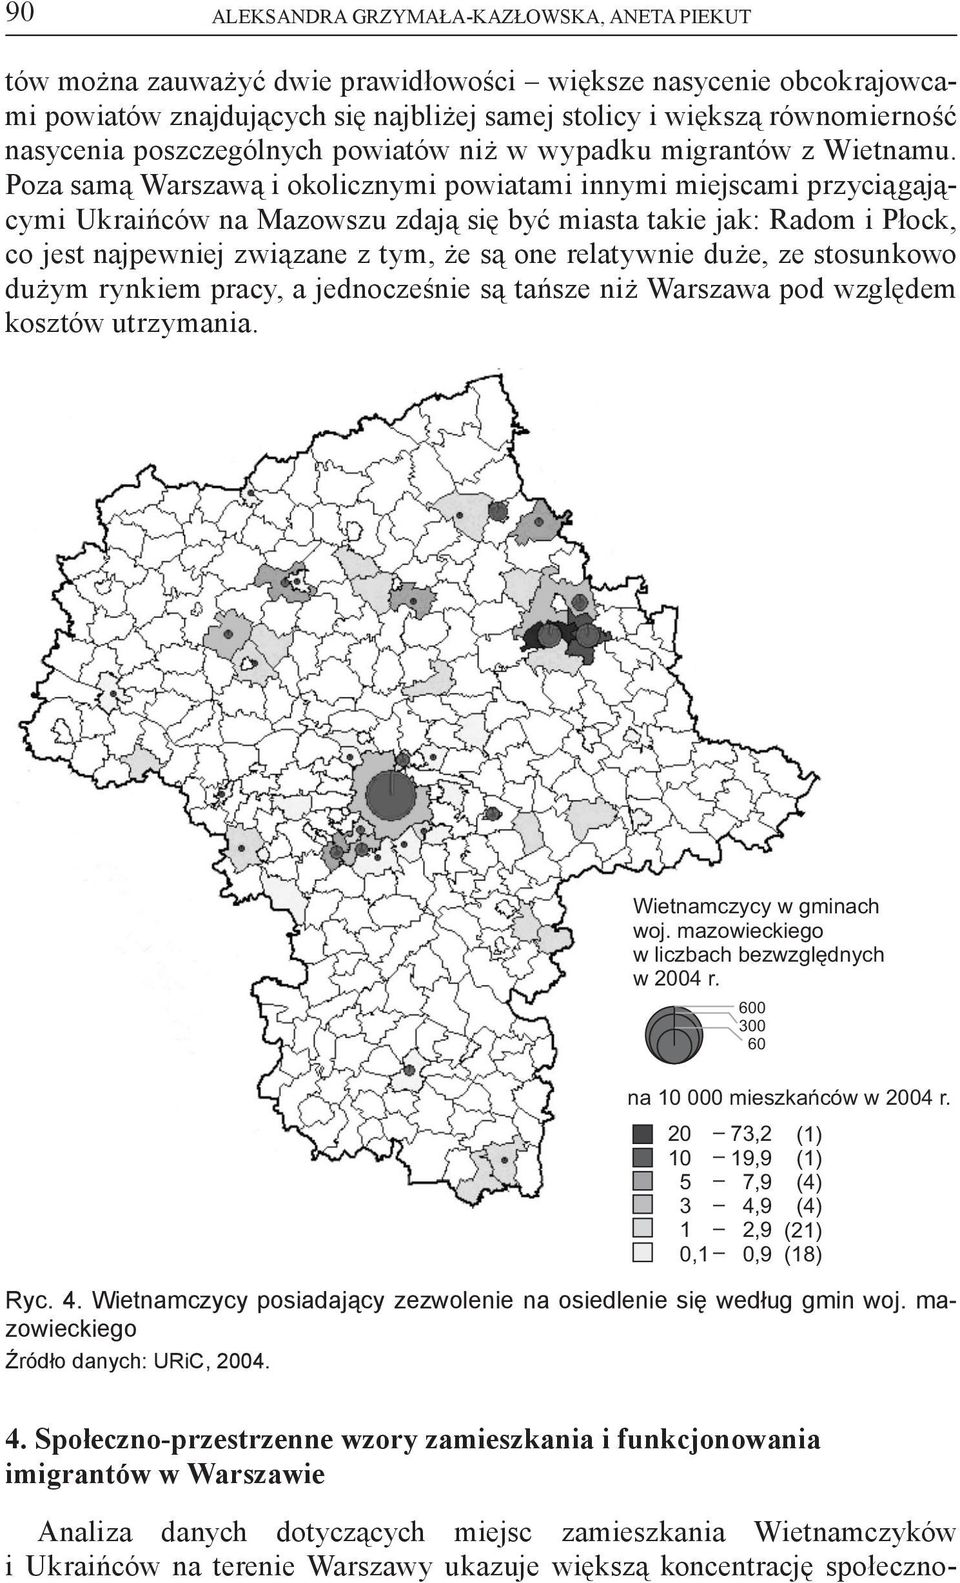 Poza samą Warszawą i okolicznymi powiatami innymi miejscami przyciągającymi Ukraińców na Mazowszu zdają się być miasta takie jak: Radom i Płock, co jest najpewniej związane z tym, że są one